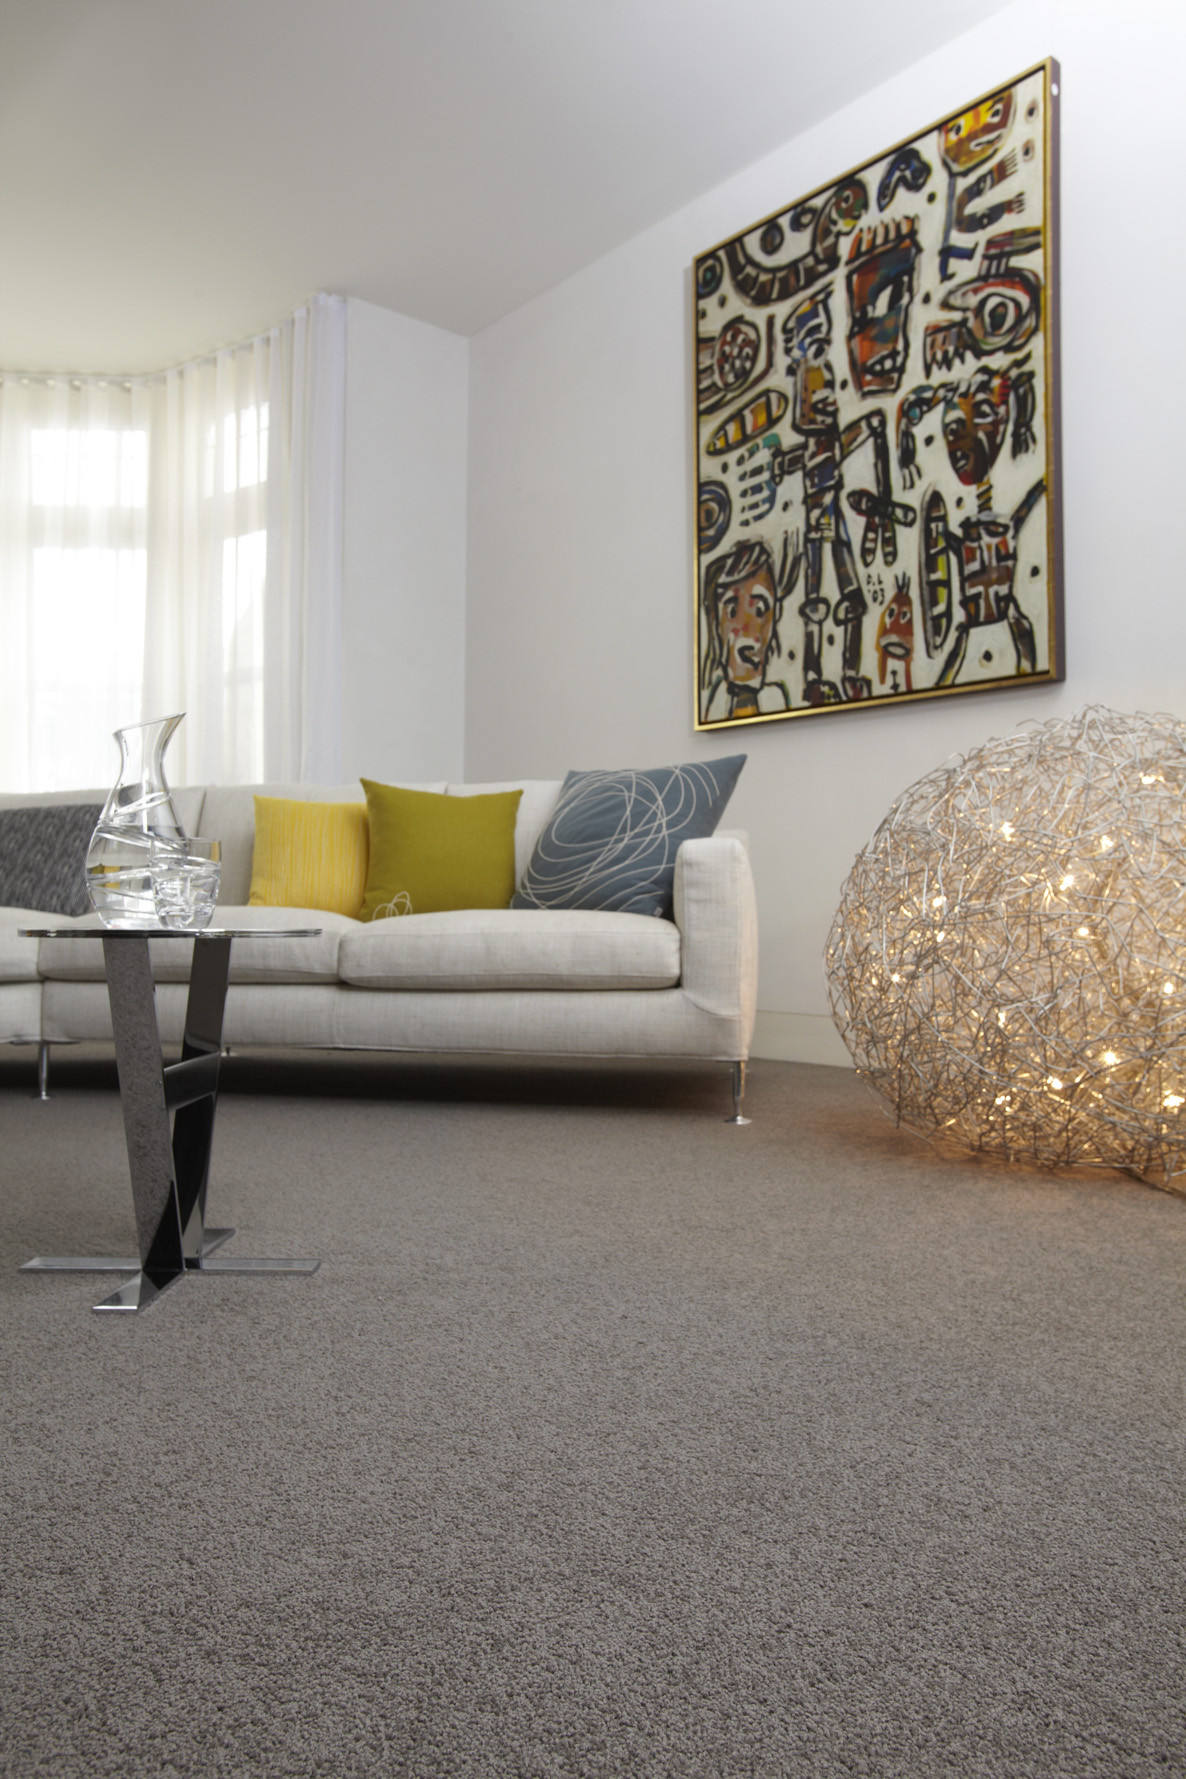 Living Room Carpet Ideas
 10 benefits of having carpet for living room